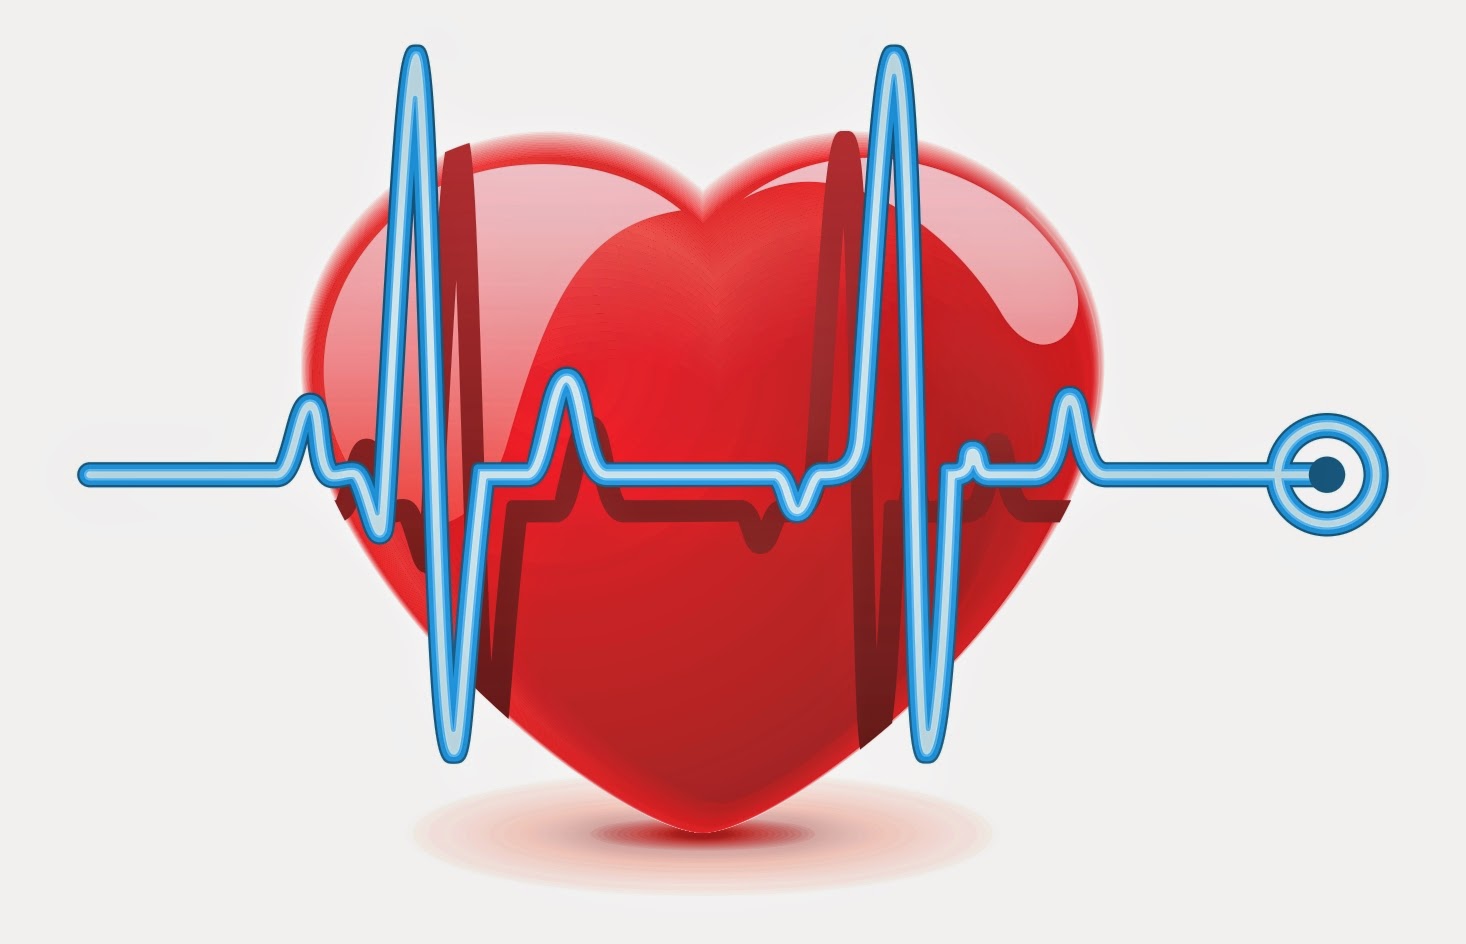 Οι παλμοί της καρδιάς προειδοποιούν για πιθανά προβλήματα υγείας